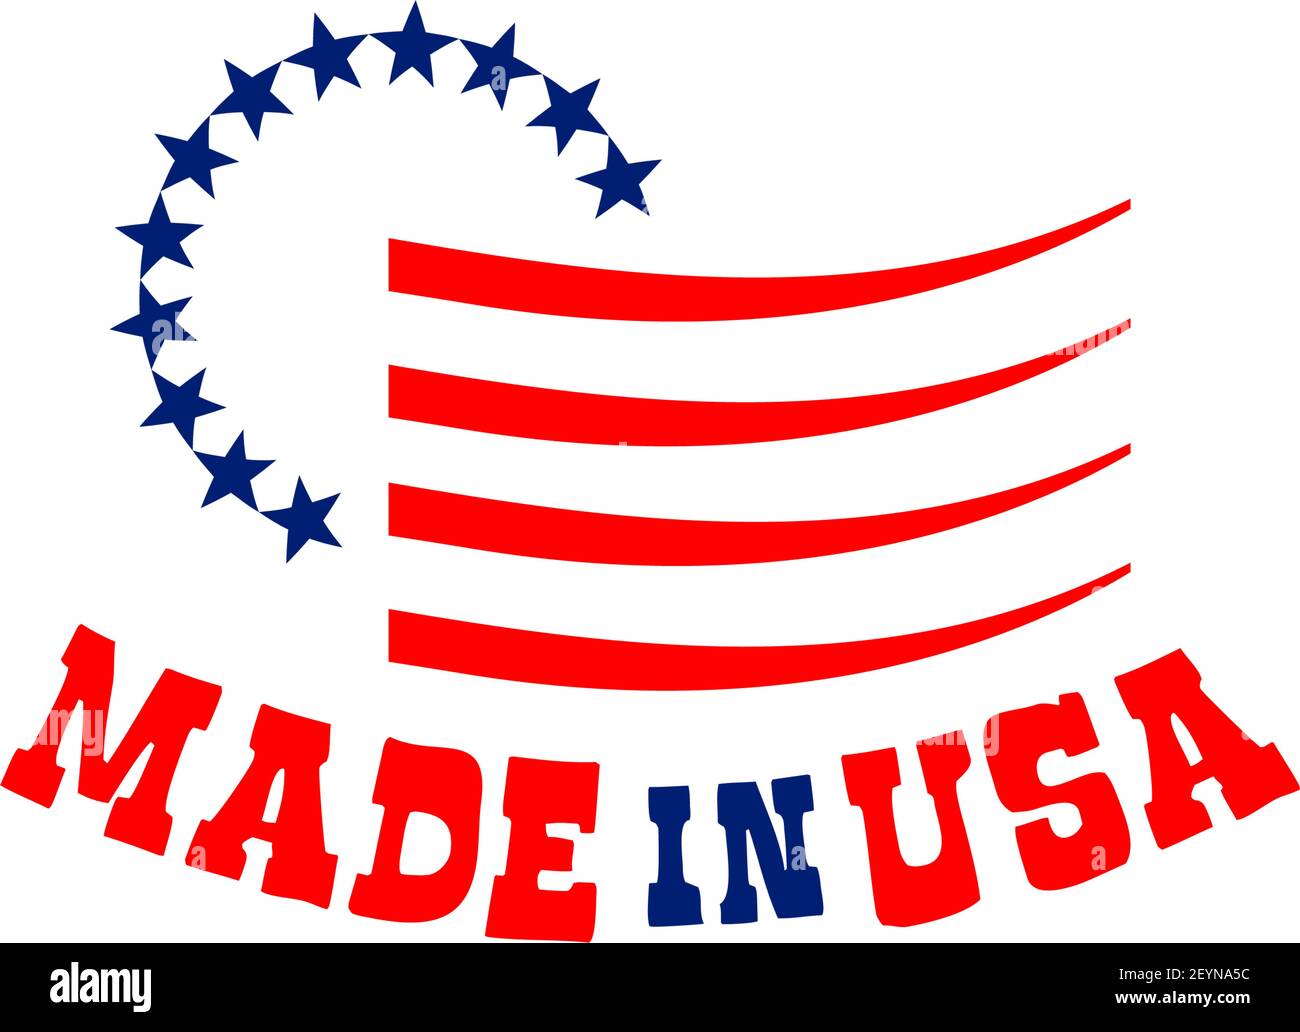 Panneau fabriqué aux États-Unis avec des étoiles. Symbole national américain en rouge et bleu. Badge pour les produits fabriqués aux Etats-Unis. États-Unis d'Amérique vecteur Illustration de Vecteur